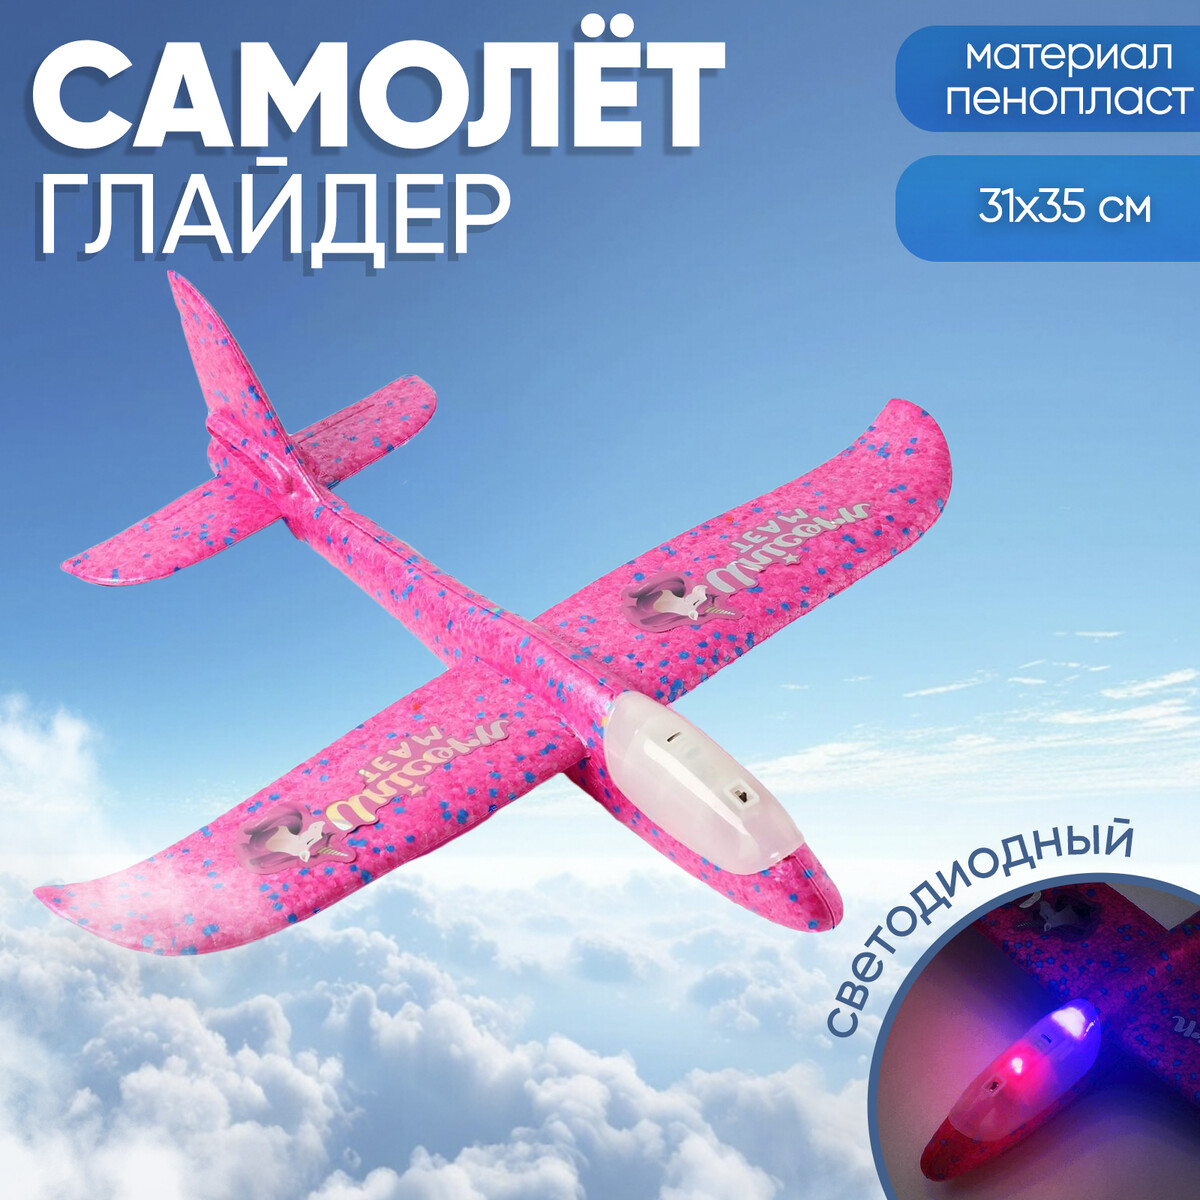 Самолет unicorn team, розовый, диодный пакет подарочный голографический упаковка unicorn 23 х 18 х 10 см